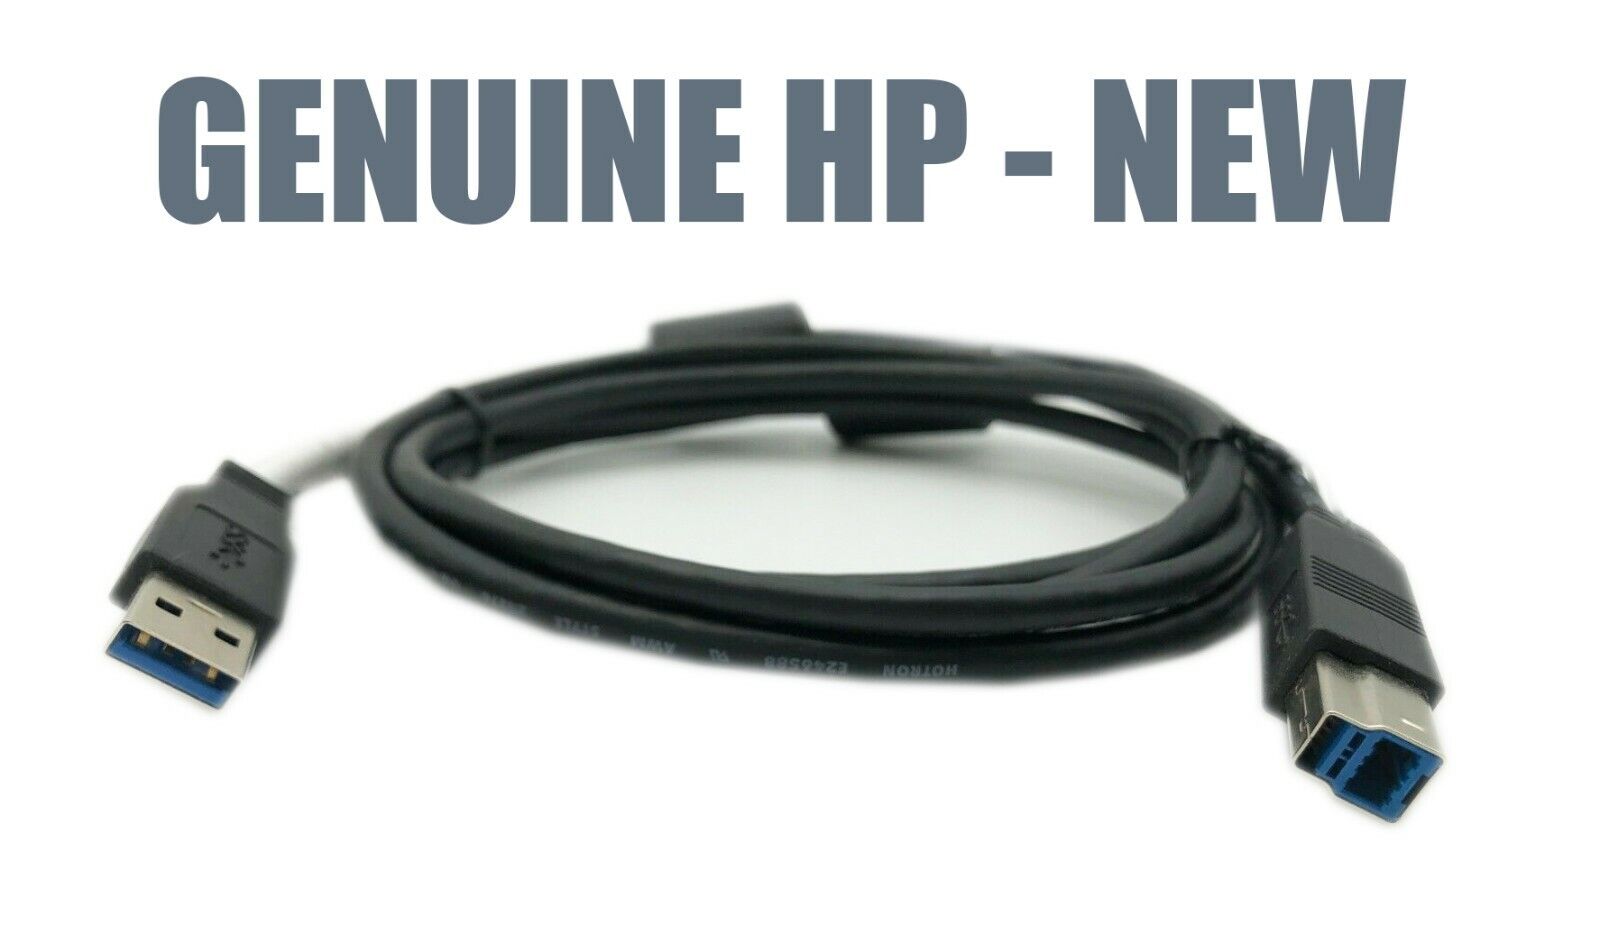 HP USB 3.0 A Male to B Male 6 ft Cable for HP 3005PR USB 3.0 Port Replicator